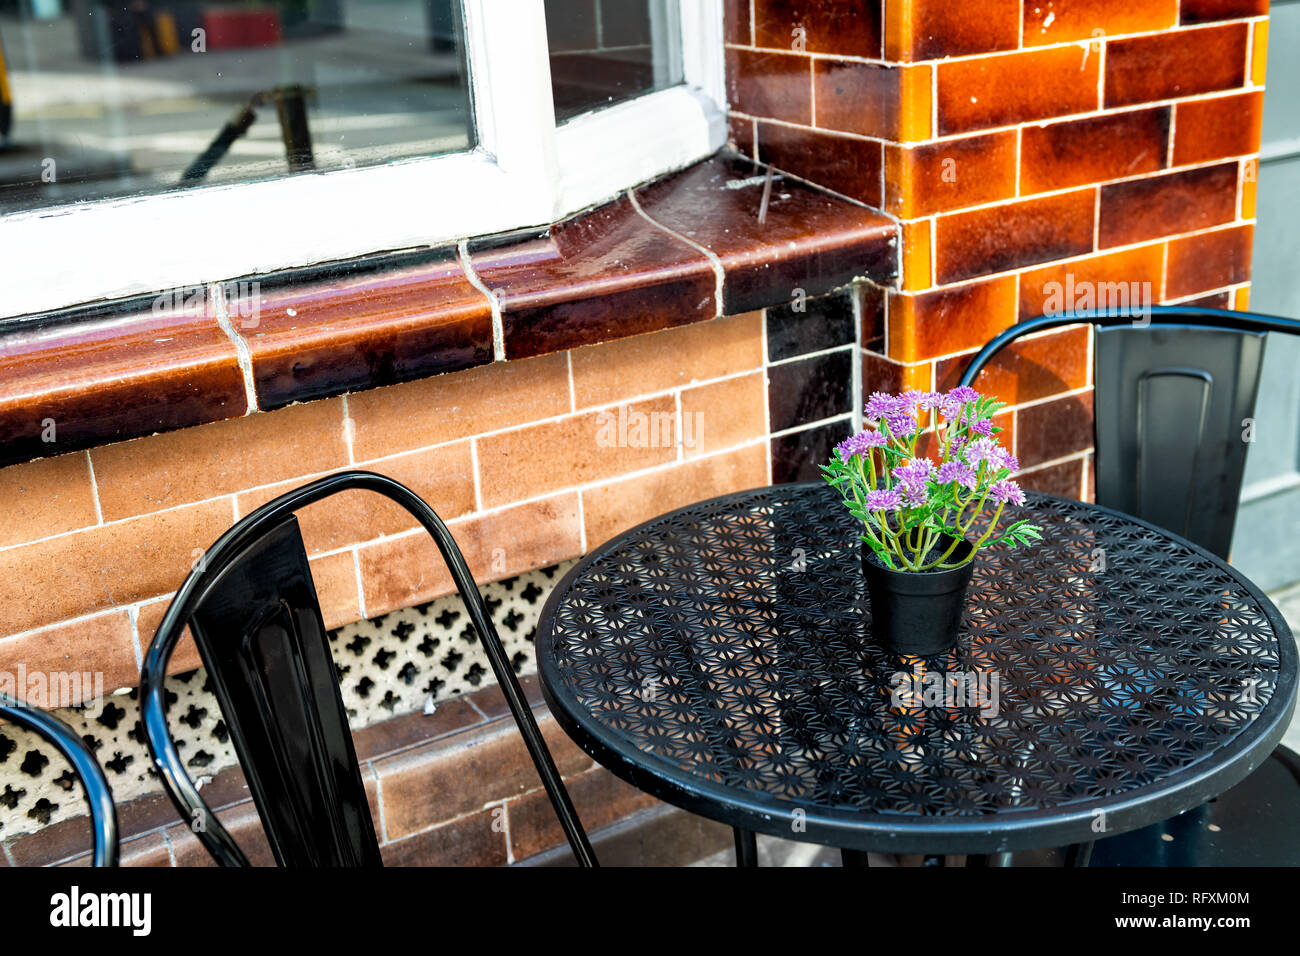 Nahaufnahme des leeren Tisch draußen Restaurant Backsteingebäude cafe Metall Stuhl auf Bürgersteig Straße mit lila Blüten Blumentopf versenkt Einstellung und niemand Stockfoto